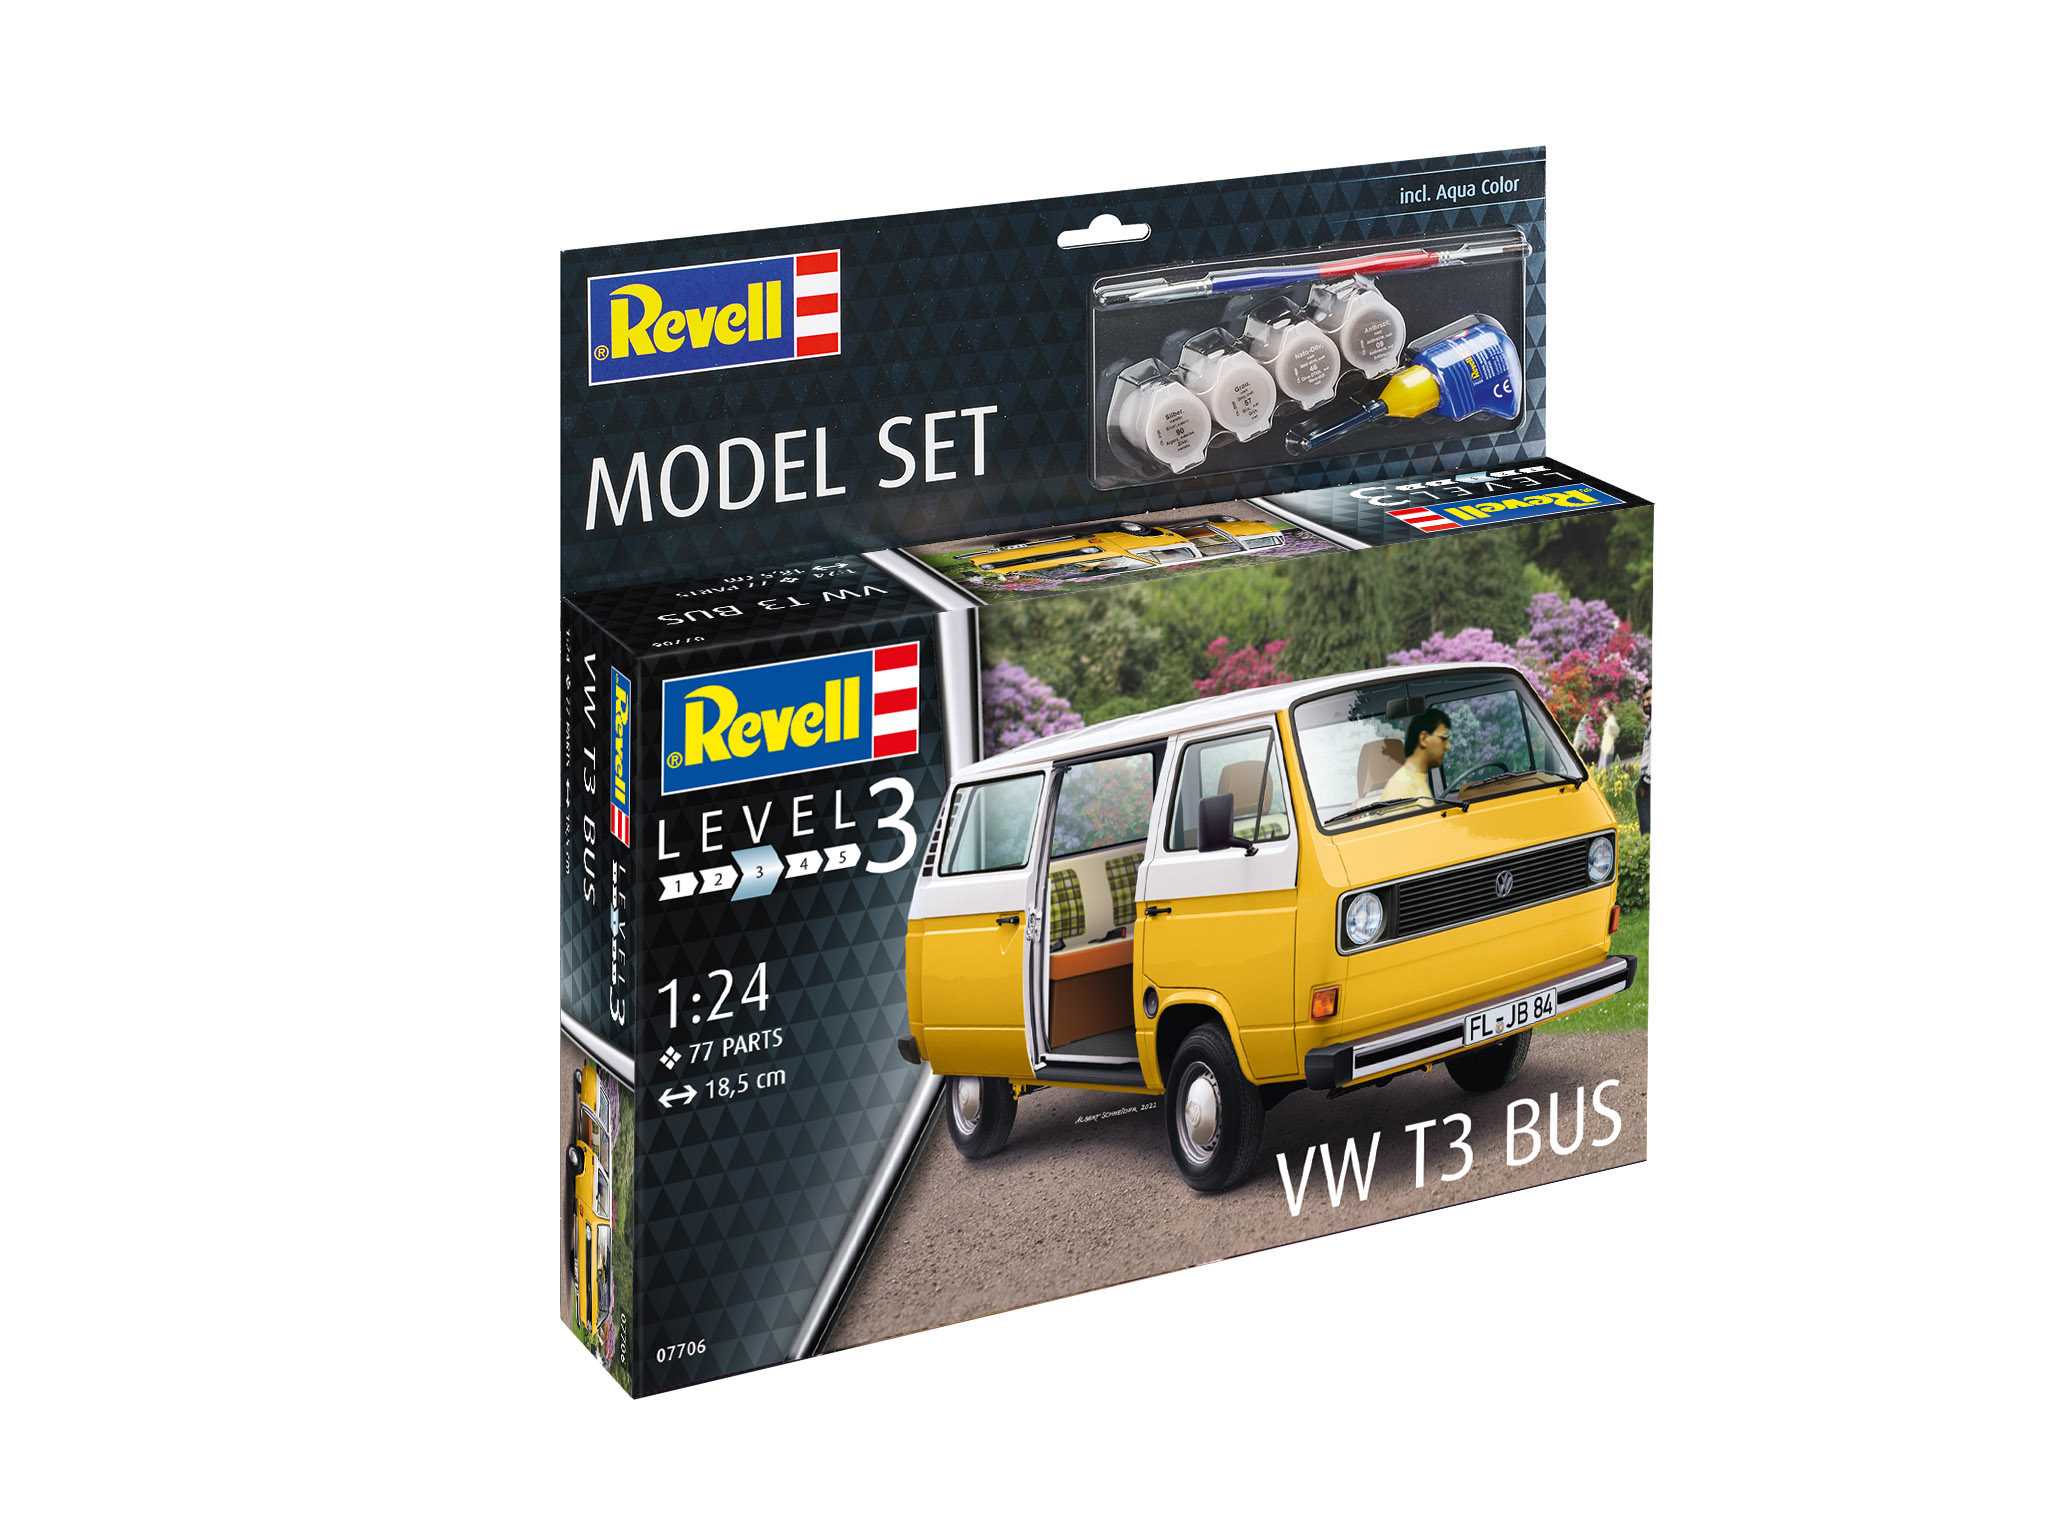 ModelSet VW T3 Bus (Revell 1:25)